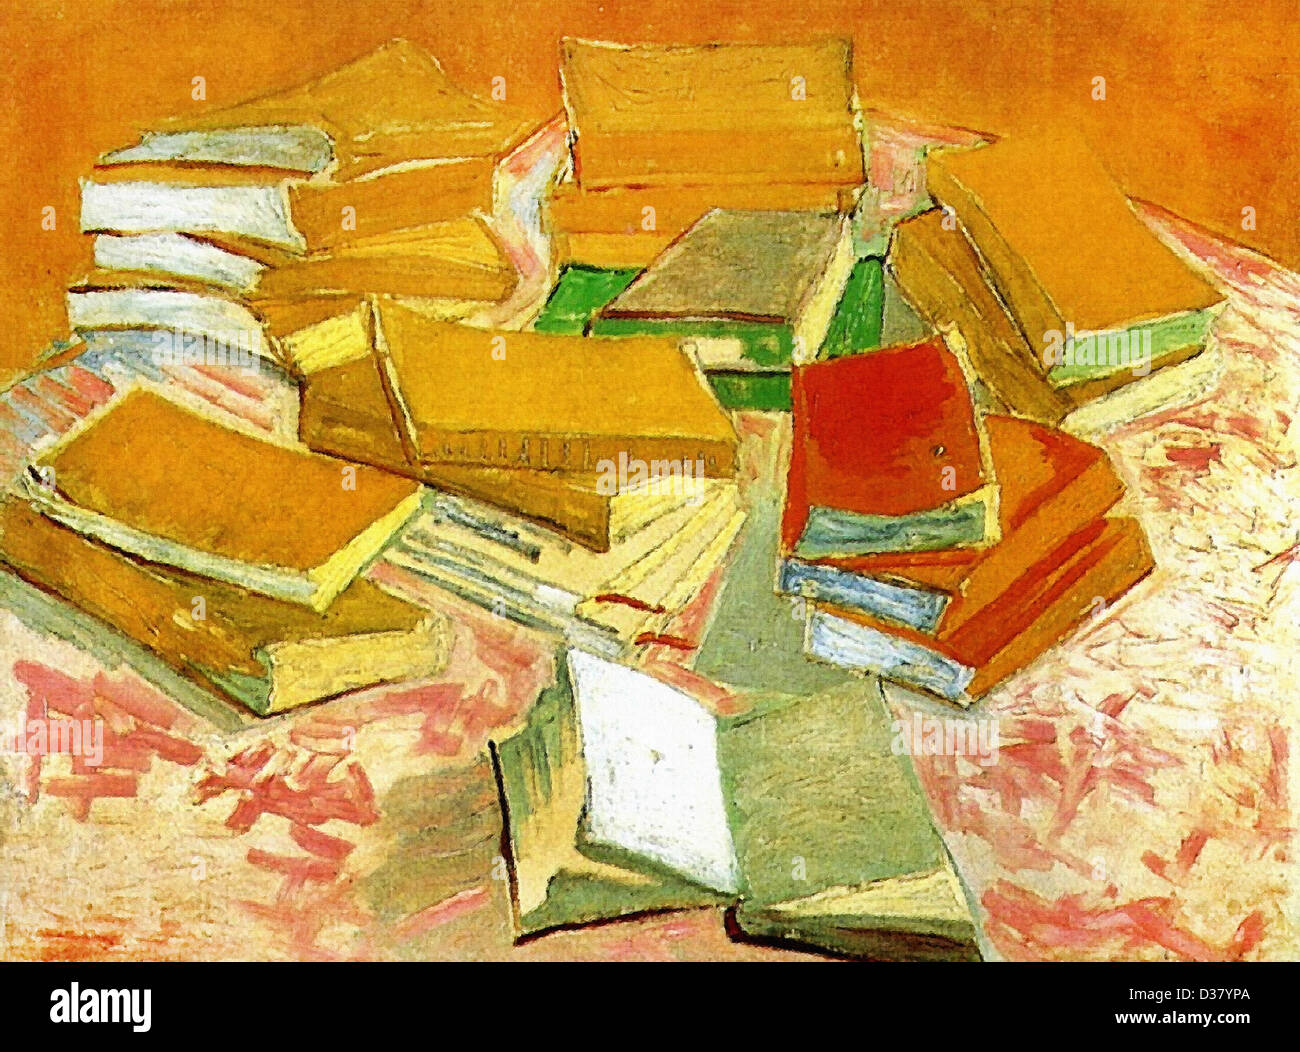 Vincent Van Gogh, Stillleben - französische Romane. 1888. Post-Impressionismus. Öl auf Leinwand. Van Gogh Museum, Amsterdam, Niederlande. Stockfoto